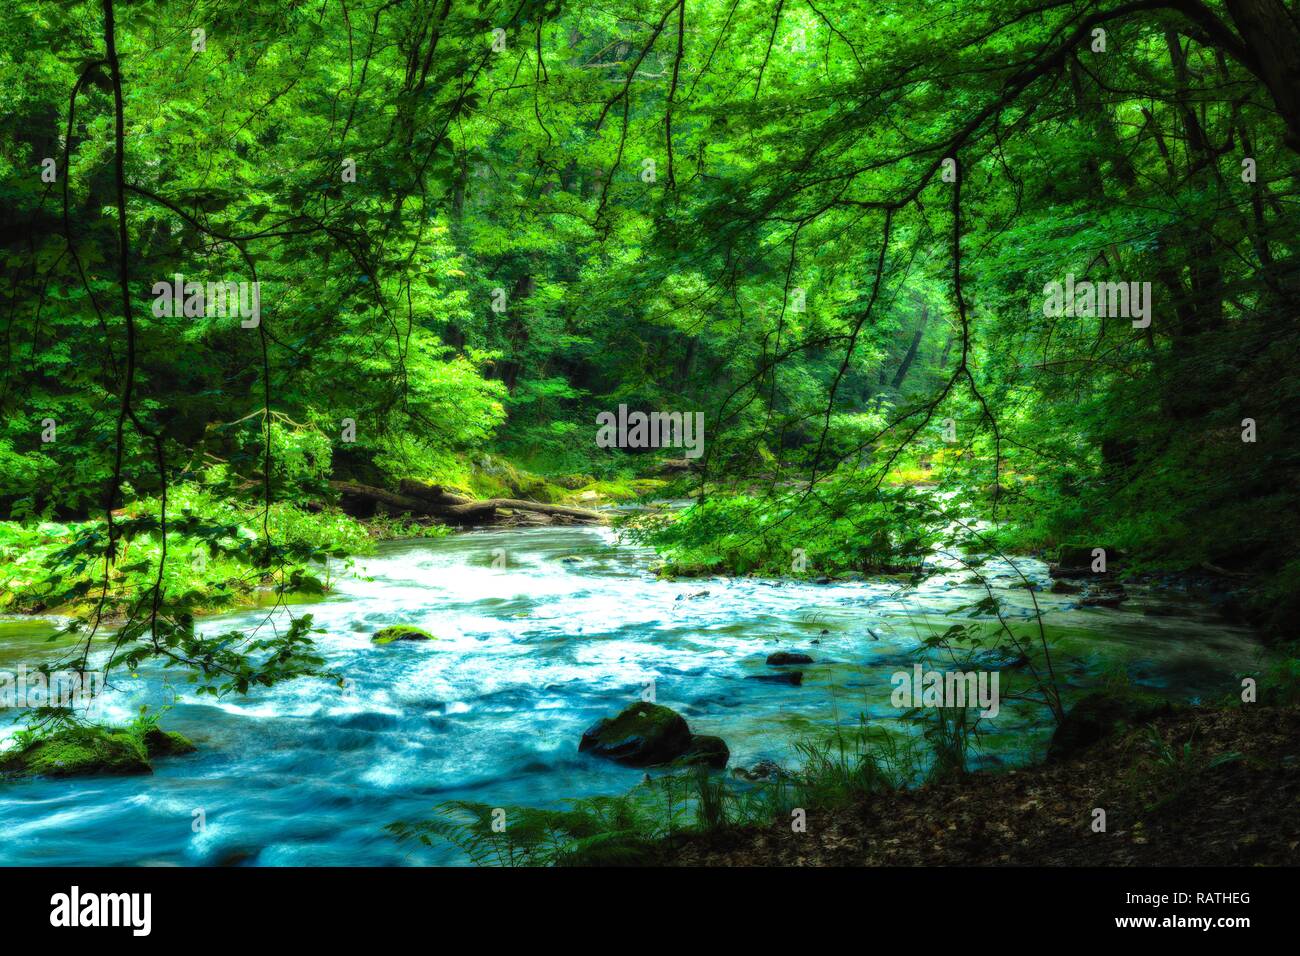 L'eau sauvage turquoise entourée de lit de la rivière et de la forêt verte Banque D'Images